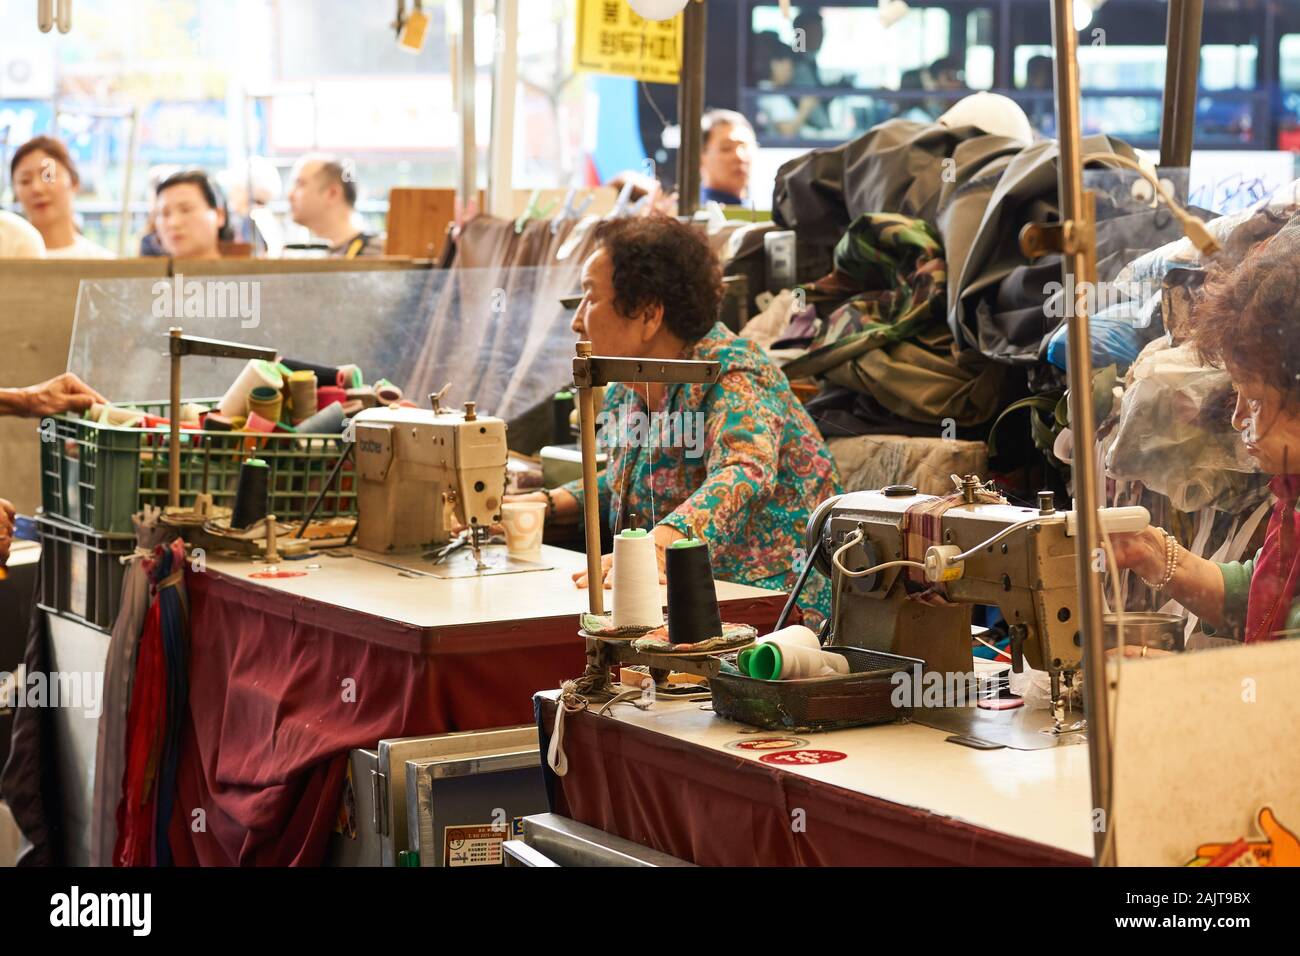 Seamstresses at Gwangjang Market performing clothing repairs with antique sewing machines at desks. Stock Photo